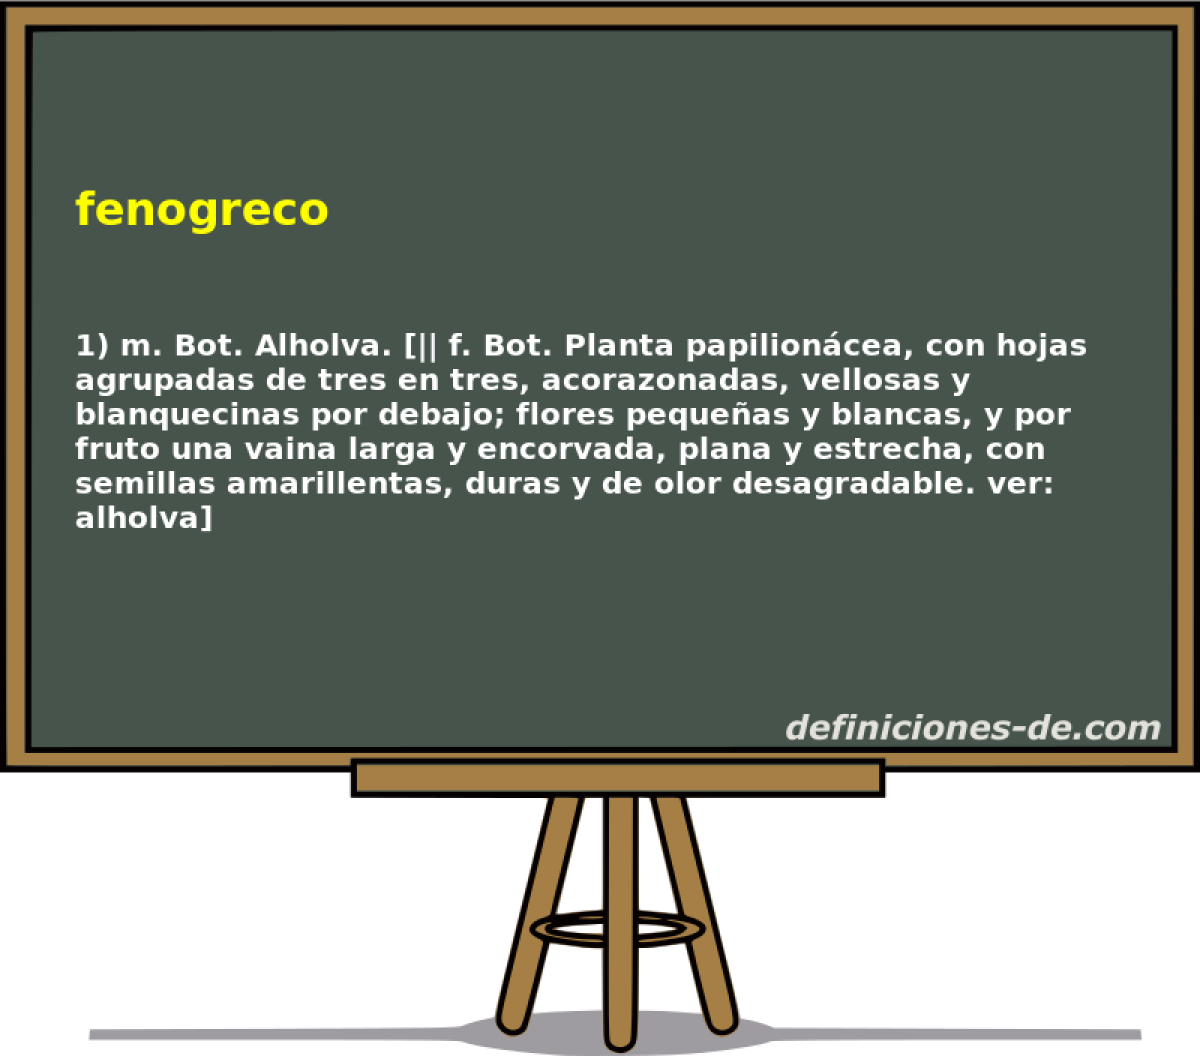 fenogreco 